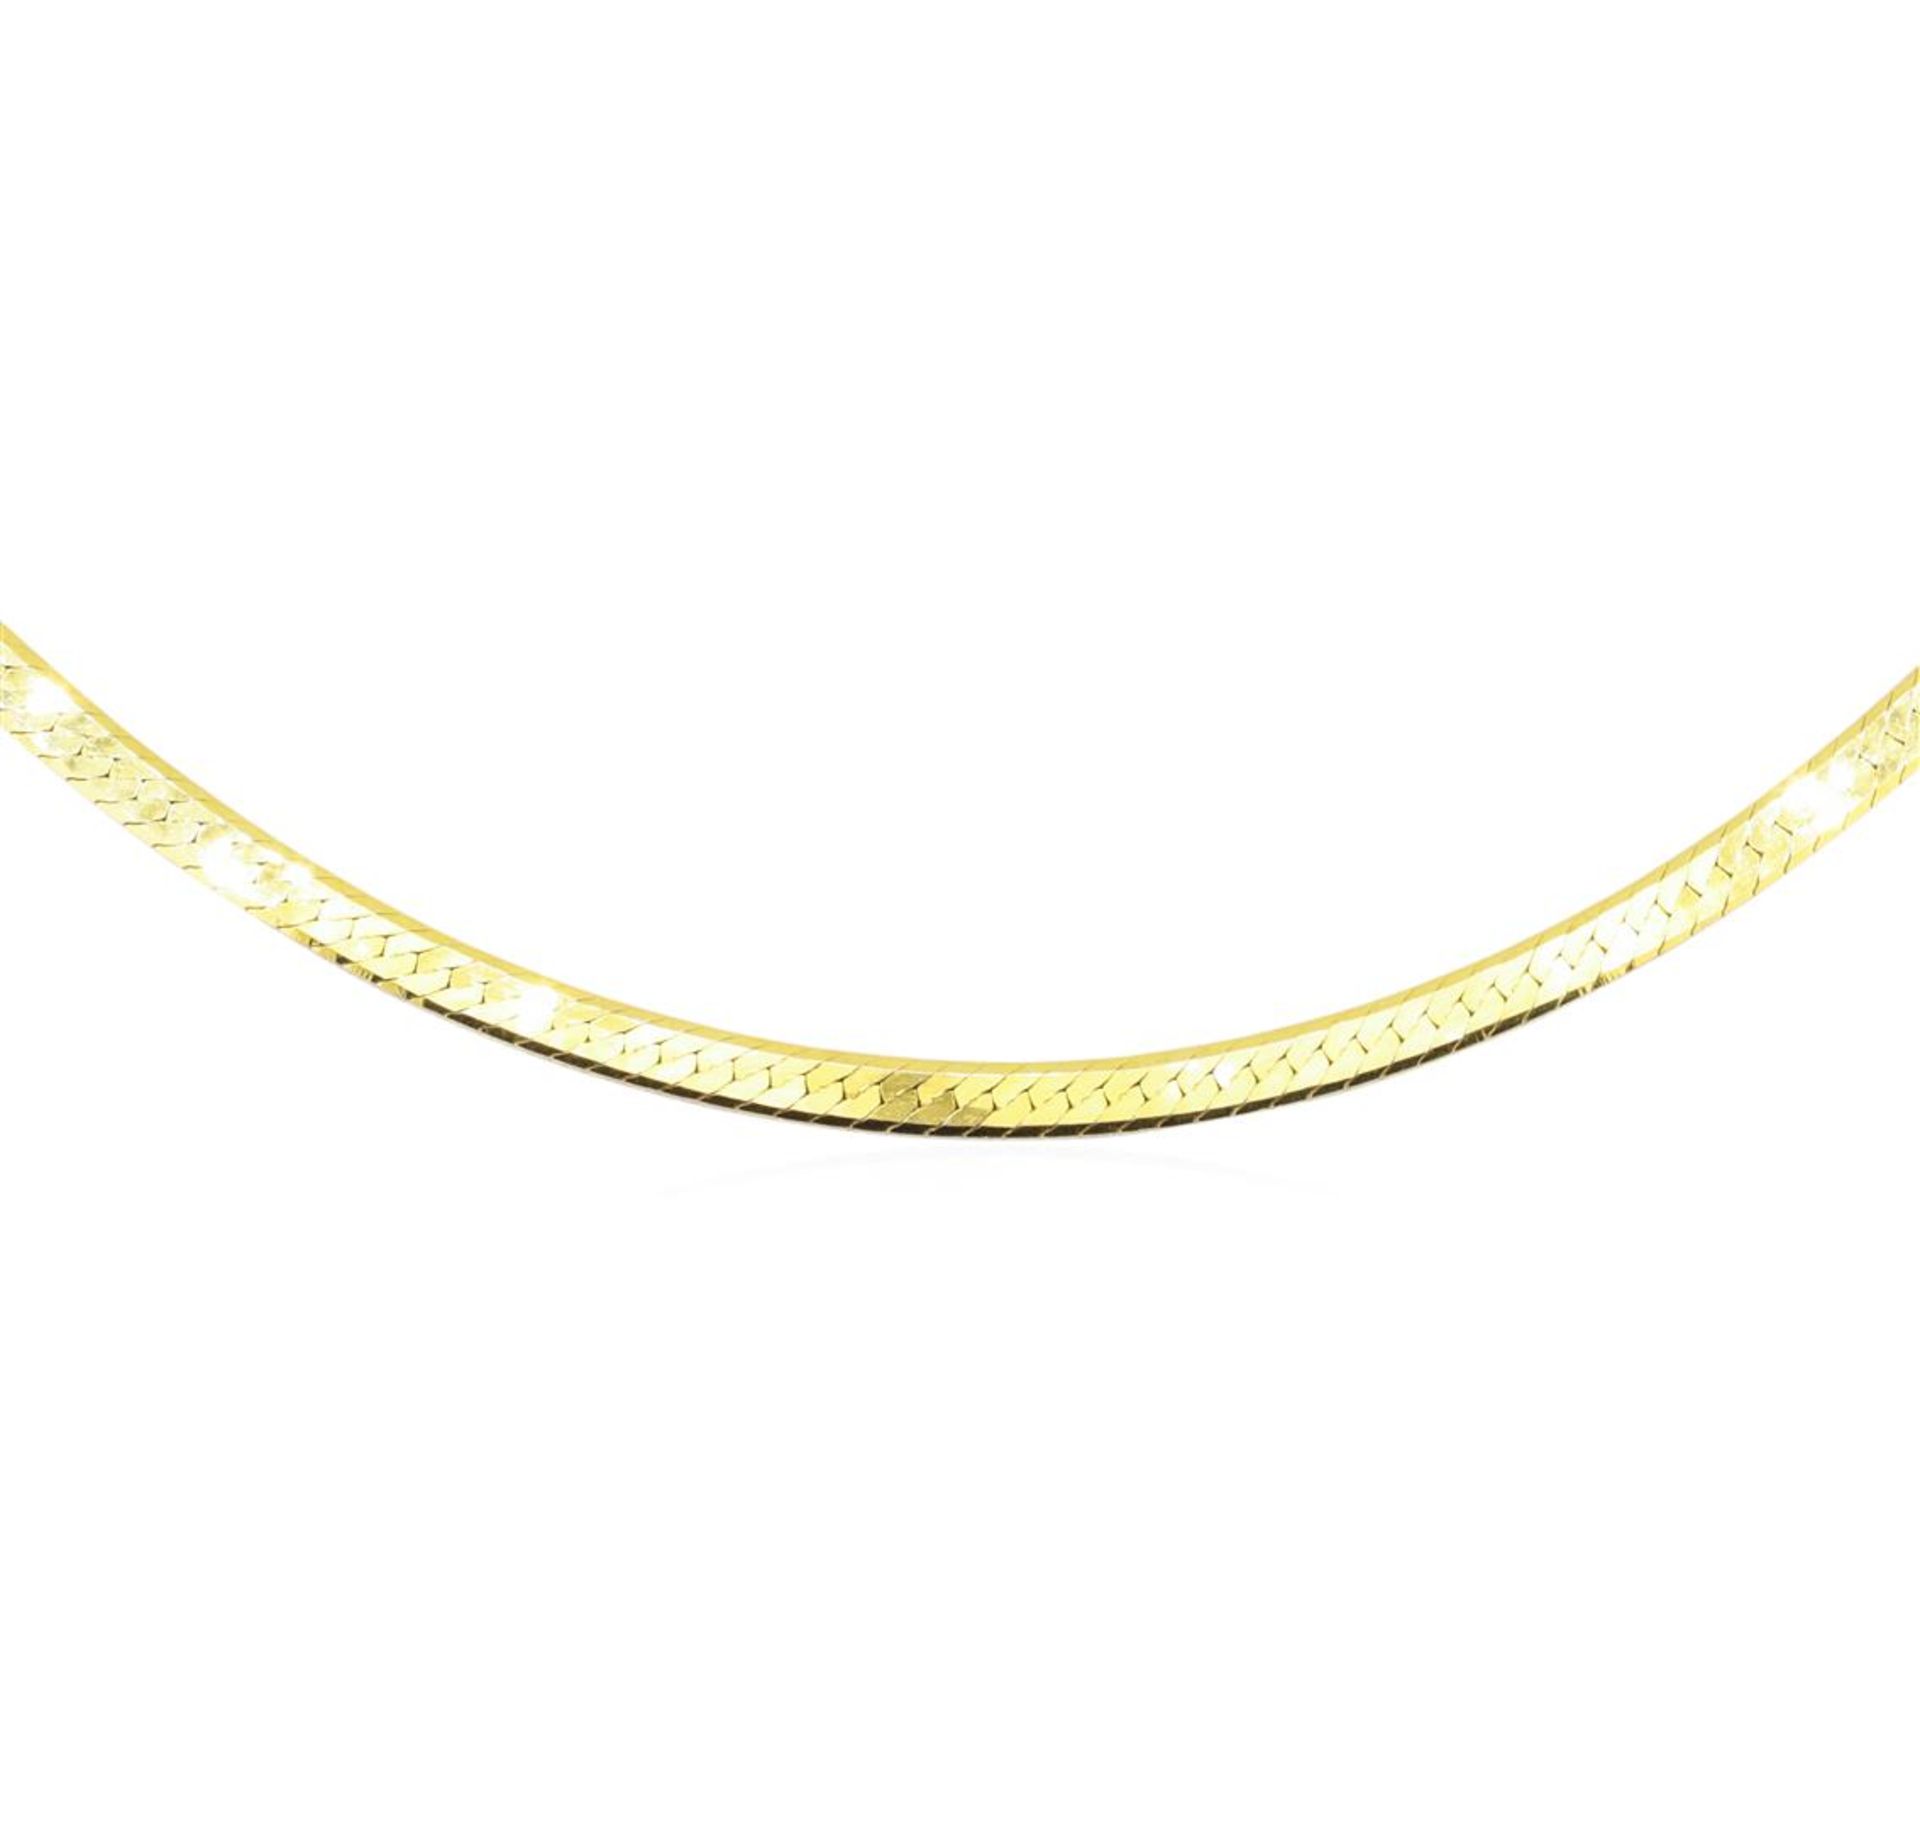 Twenty Inch Herringbone Chain - 14KT Yellow Gold - Image 2 of 2